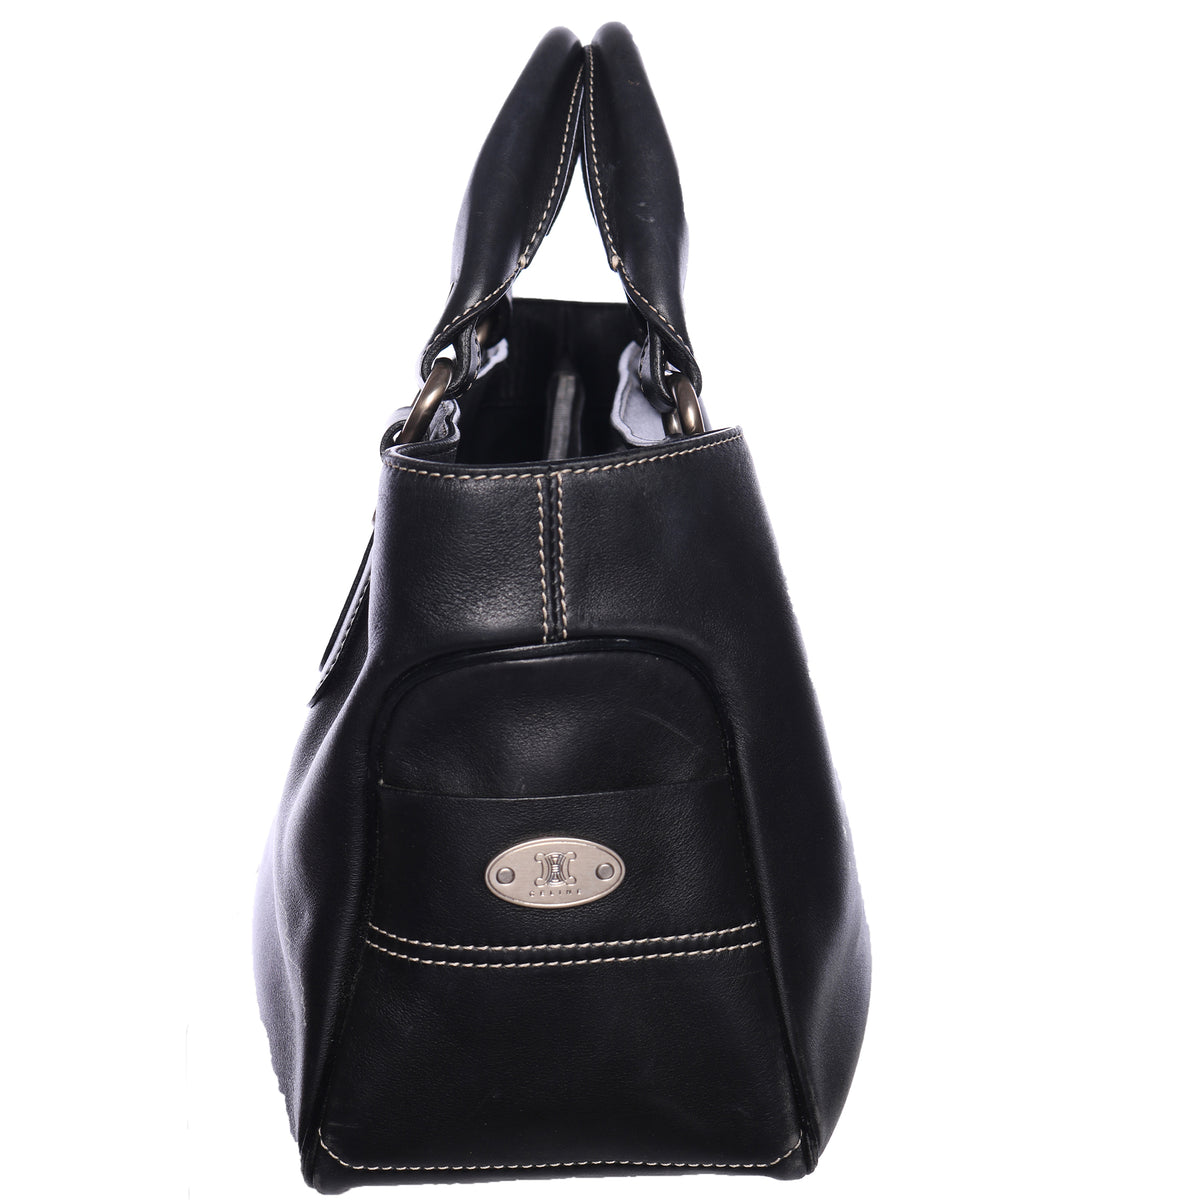 Vtg CELINE Oblong Leather Tote Top Handle Satchel Bag